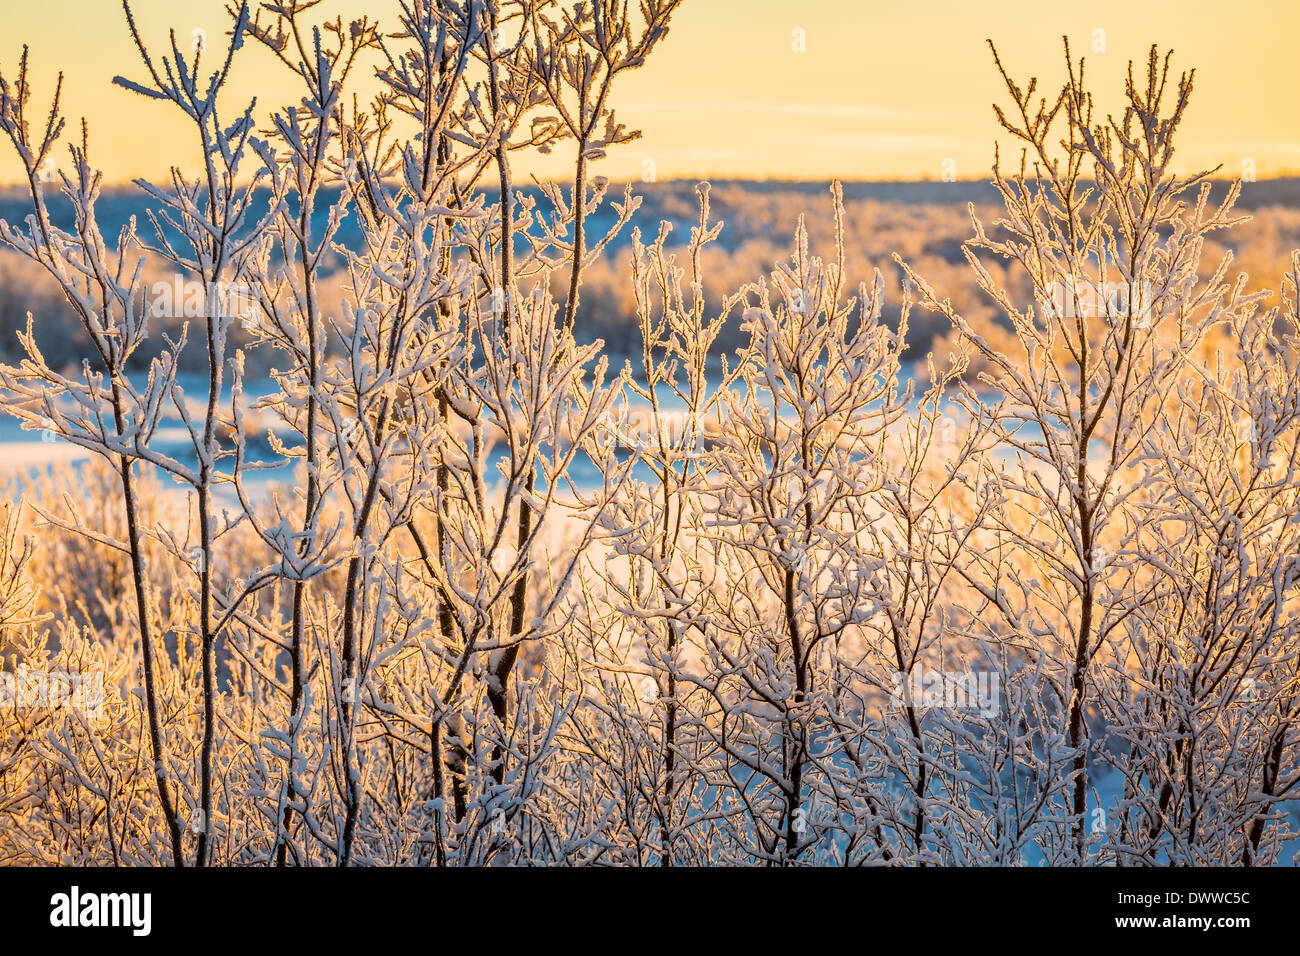 Coucher du soleil et des arbres dans le paysage gelé de froid, des températures aussi basses que -47 degrés Celsius, Laponie, Suède Banque D'Images